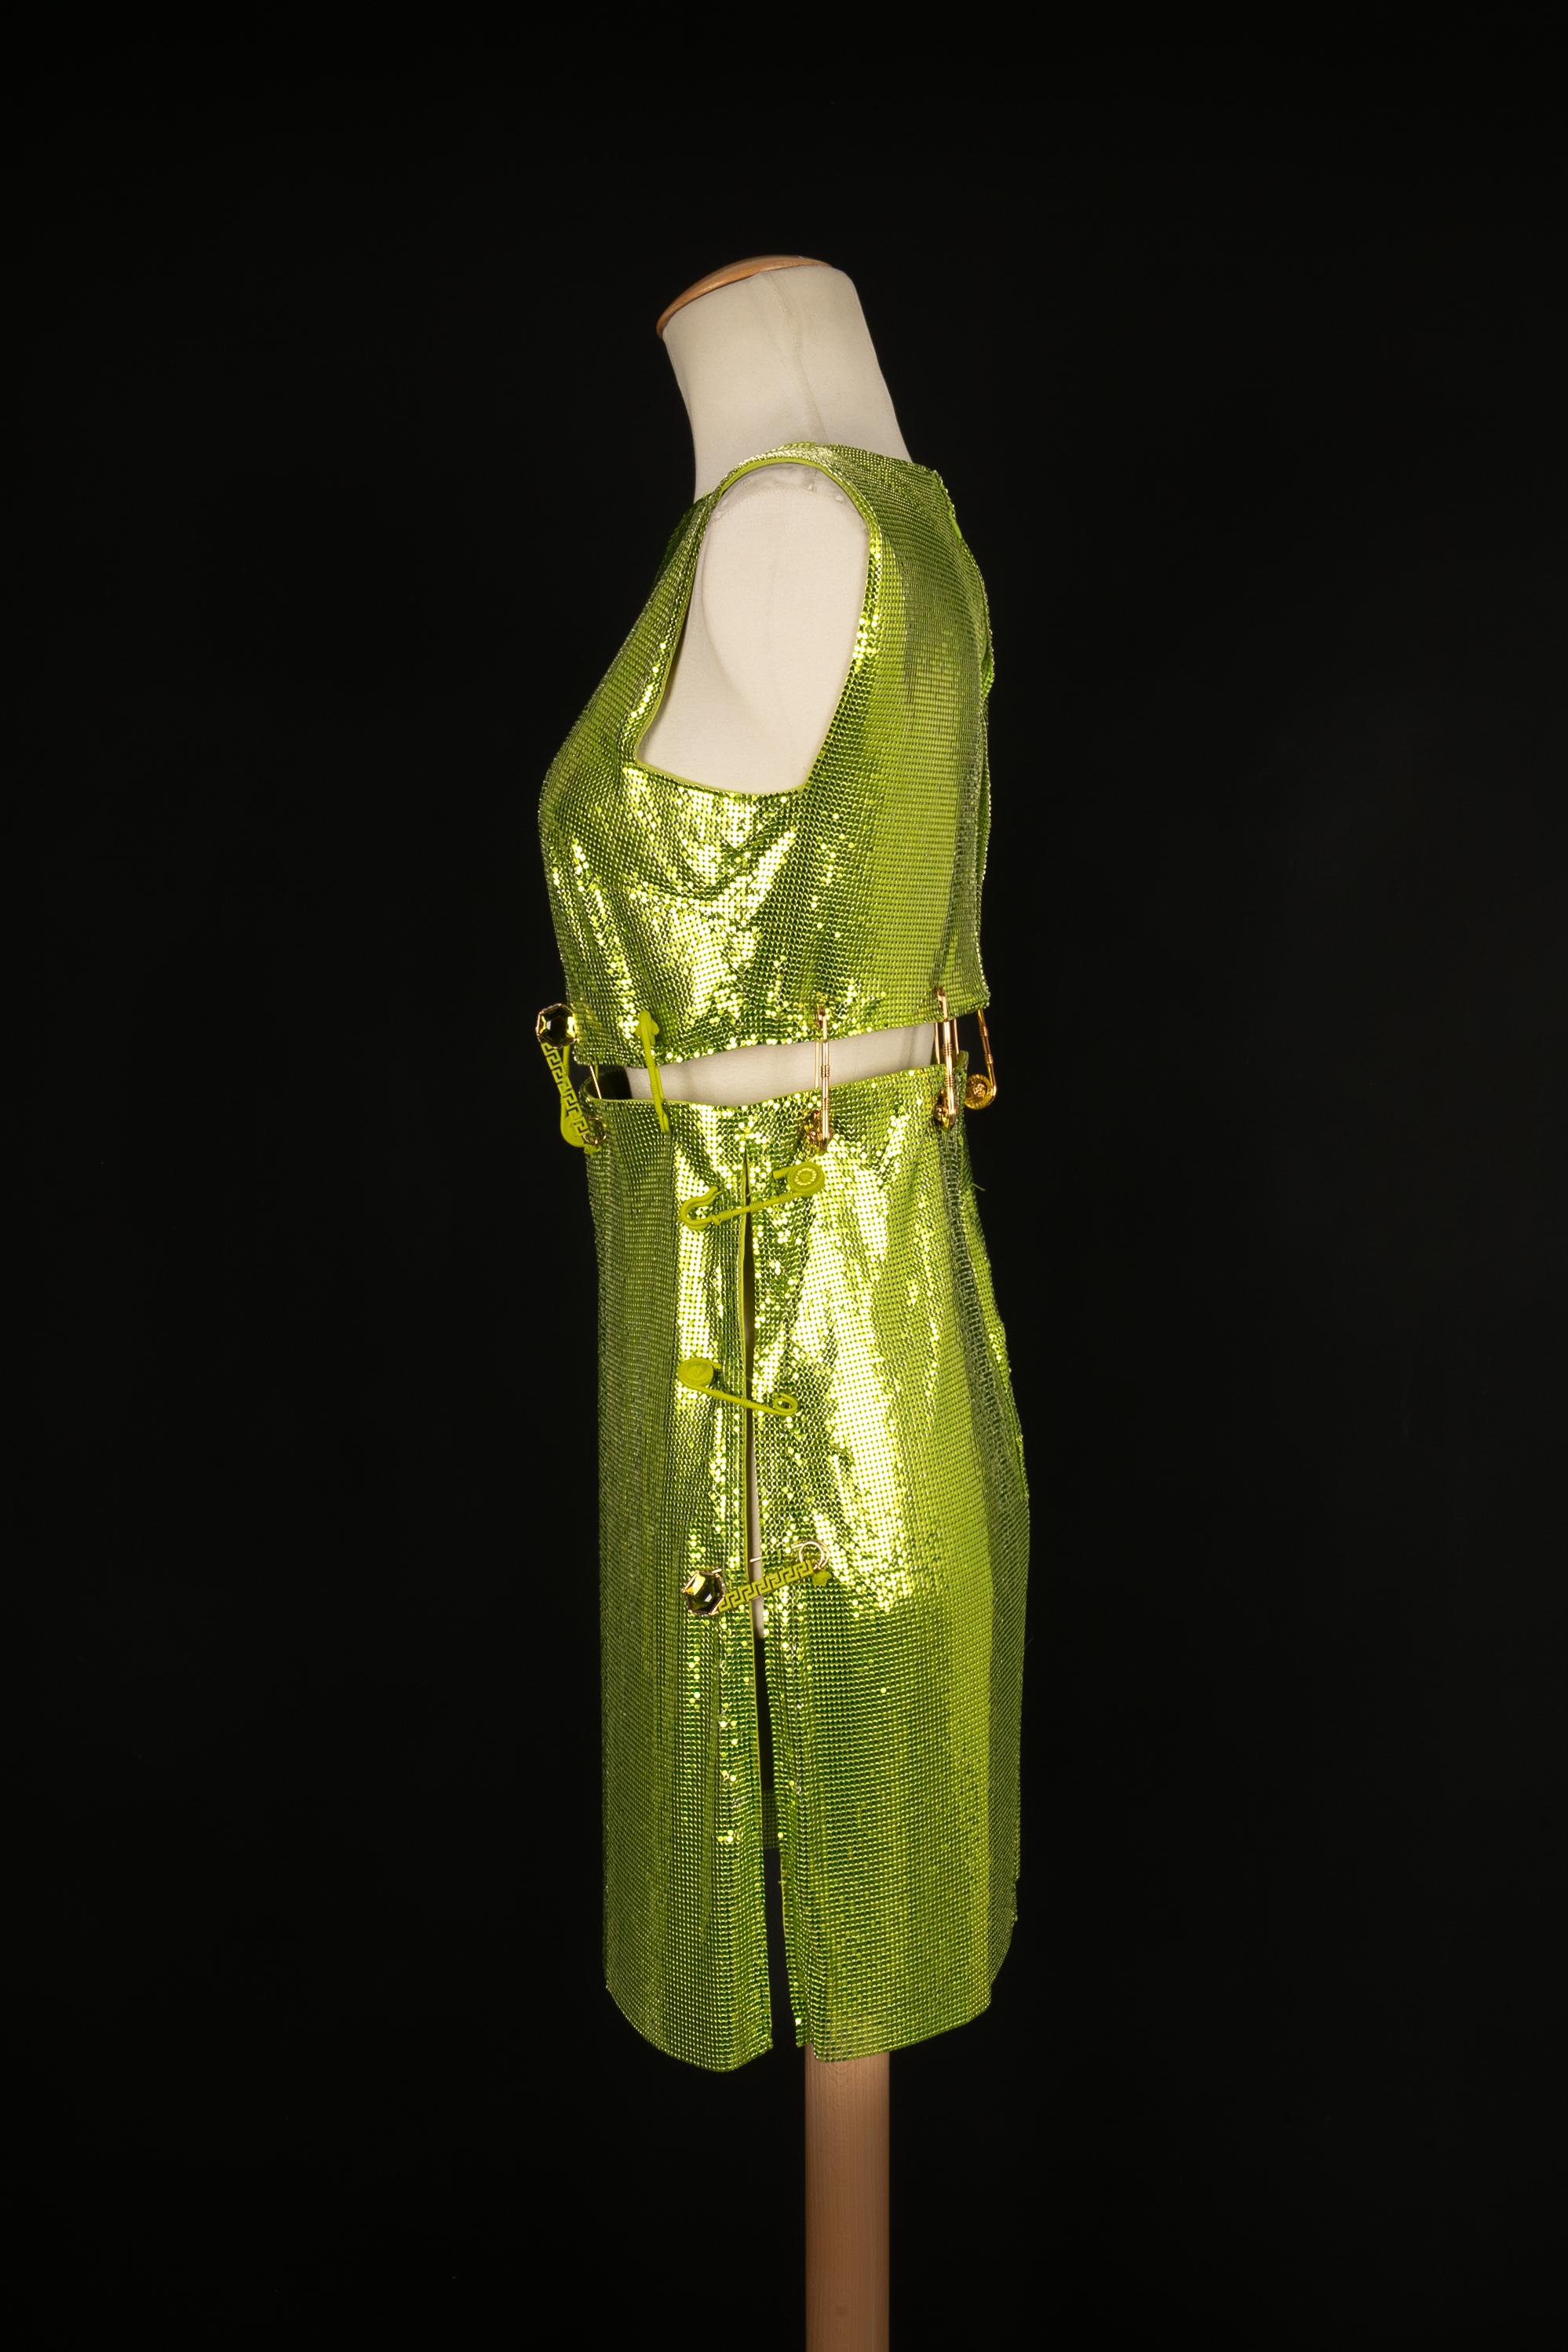 VERSACE - (Made in Italy) Grünes Kleid aus metallischem Netzstoff mit beeindruckenden Sicherheitsnadeln. Größe 36FR angegeben. 2022 Spring-Summer Collection'S.

Bedingung:
Sehr guter Zustand

Abmessungen:
Brustumfang: 40 cm - Taille: 36 cm - Hüfte: